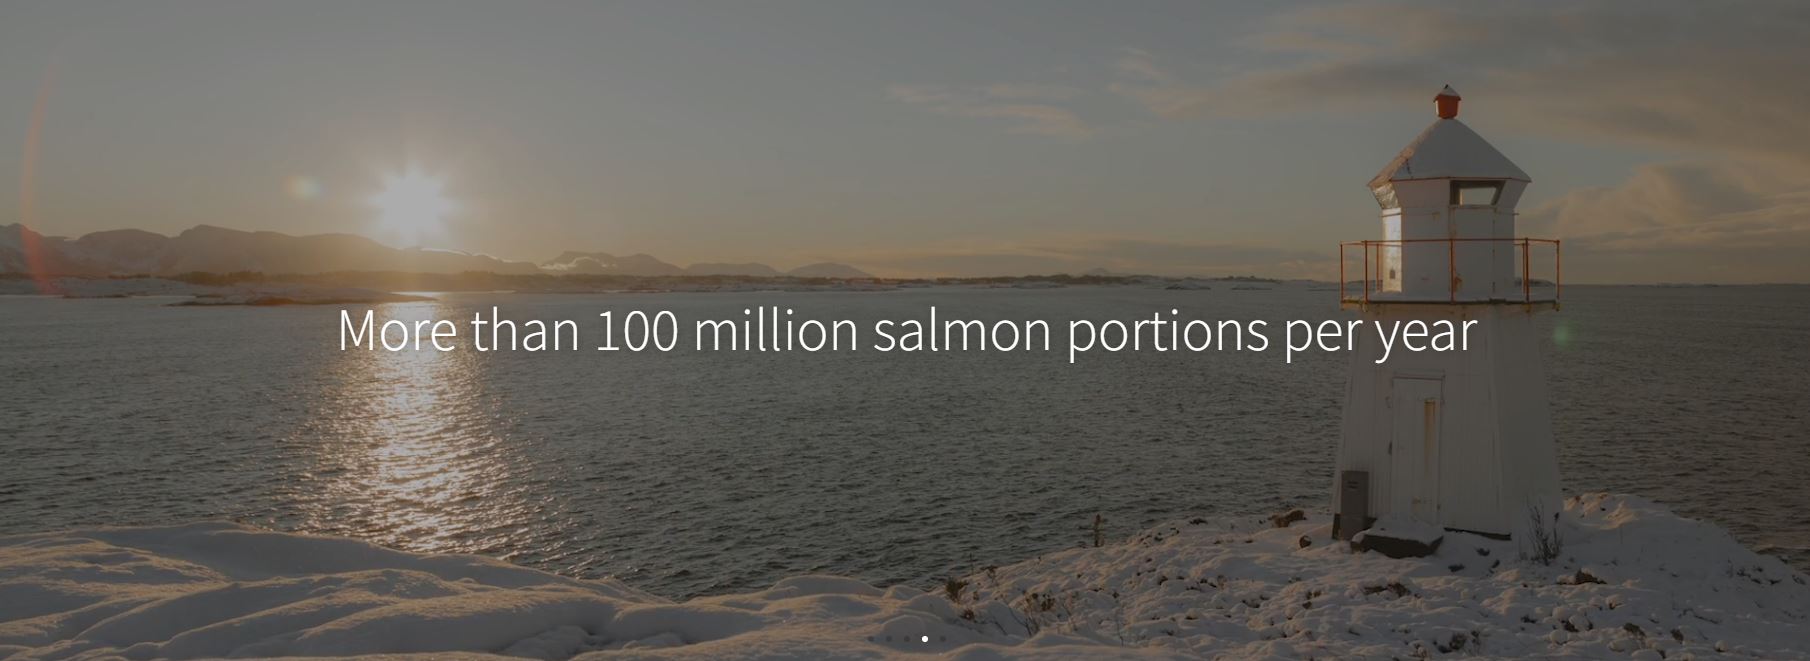 Salmon Evolution - landbasierte Lachszucht 1323047